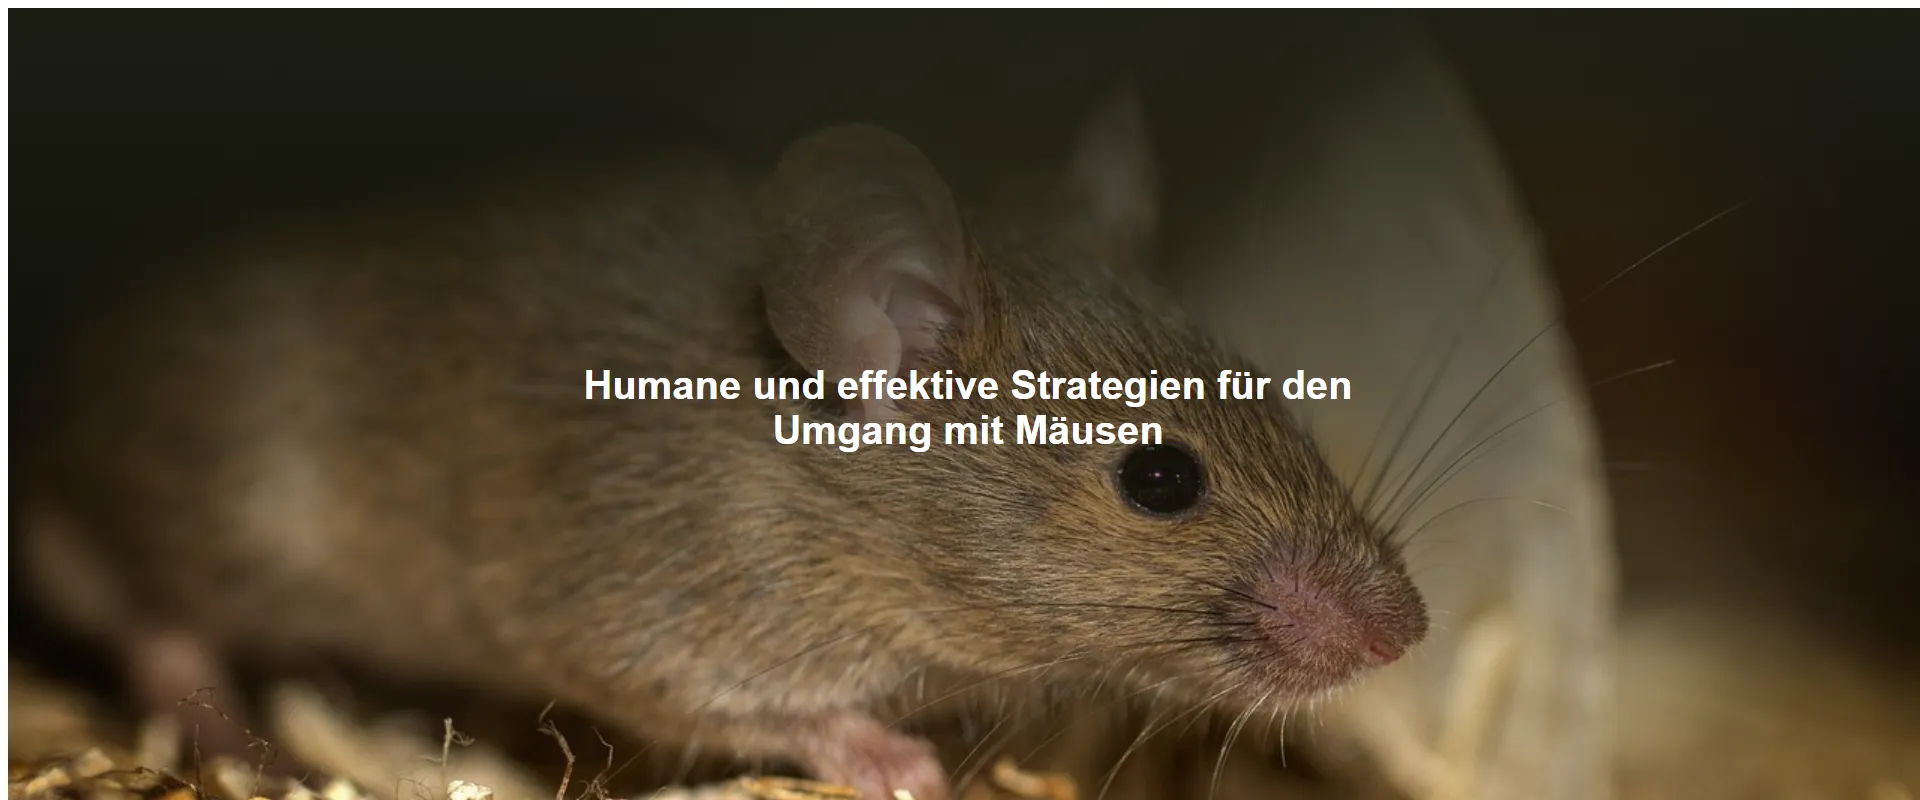 Humane und effektive Strategien für den Umgang mit Mäusen